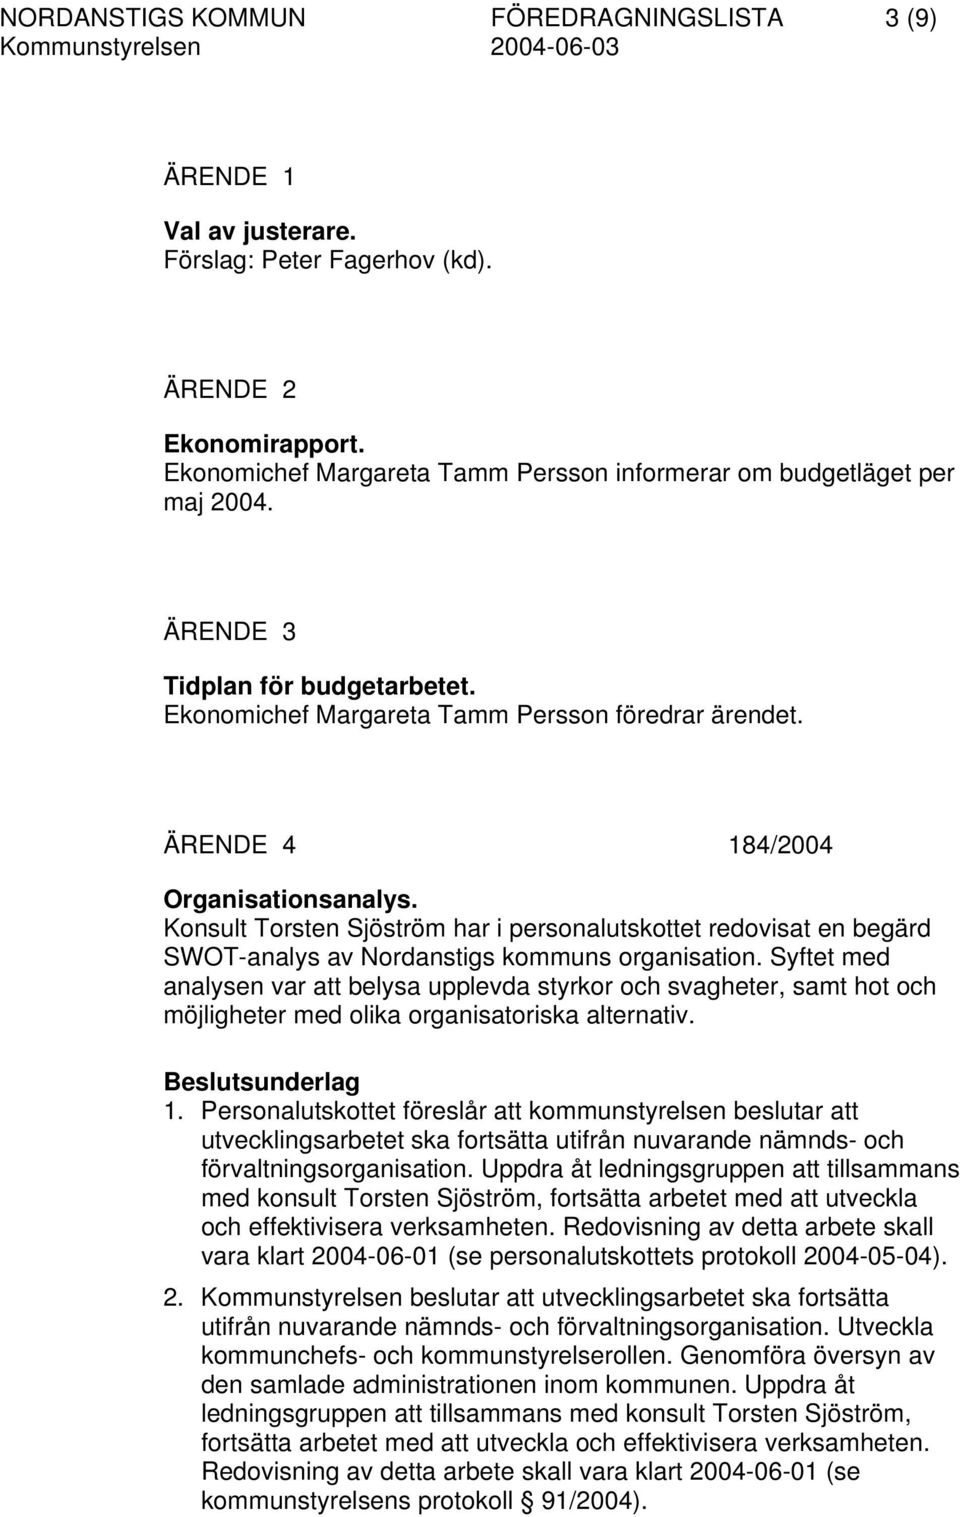 Konsult Torsten Sjöström har i personalutskottet redovisat en begärd SWOT-analys av Nordanstigs kommuns organisation.